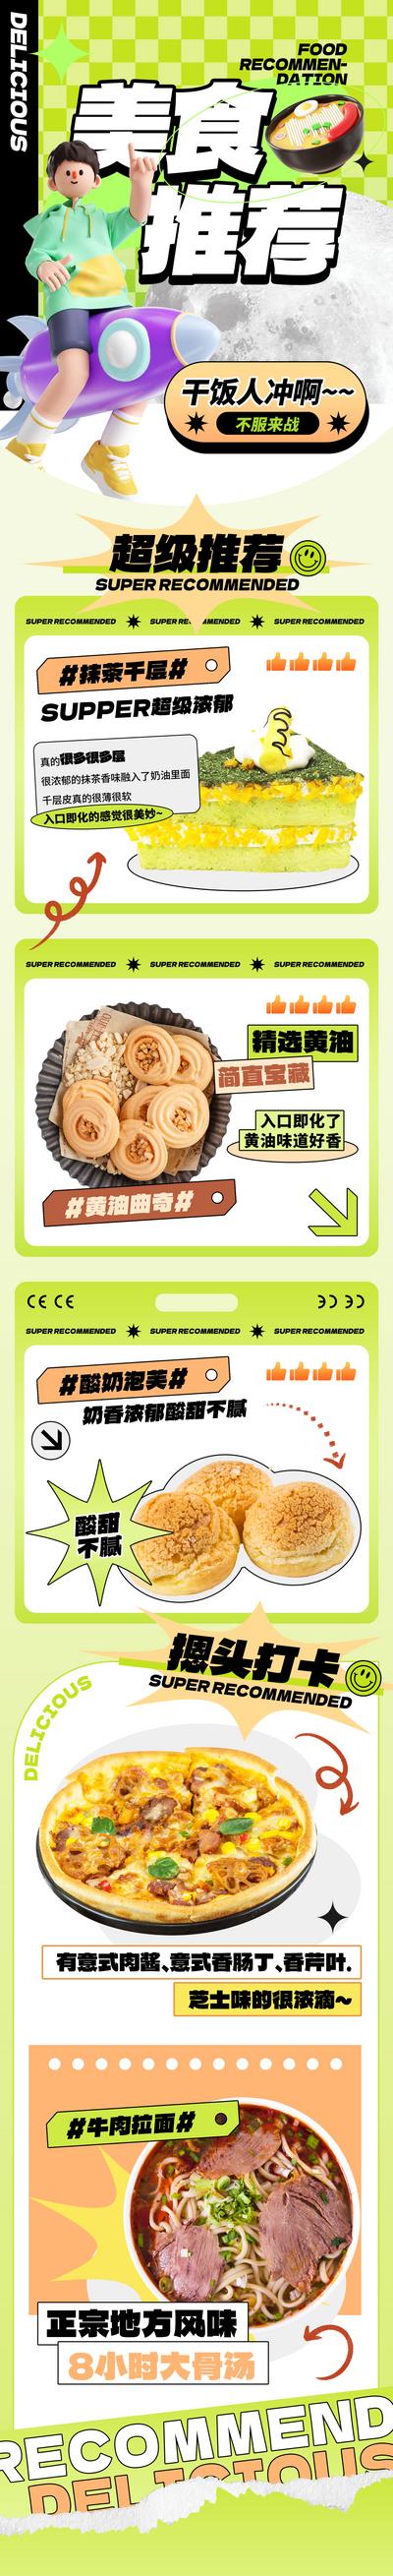 南门网 广告 海报 商场 美食 专题 长图 推文 蛋糕 糕点